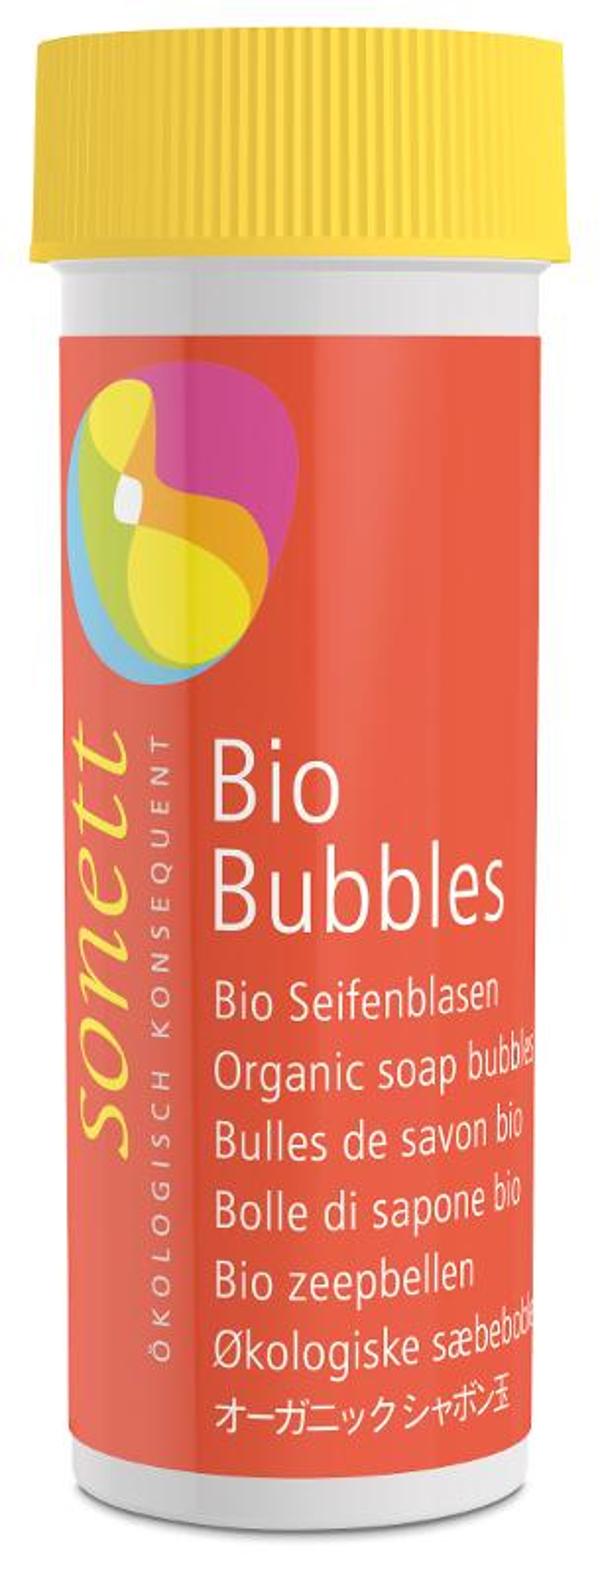 Produktfoto zu Seifenblasen Bio Bubbels